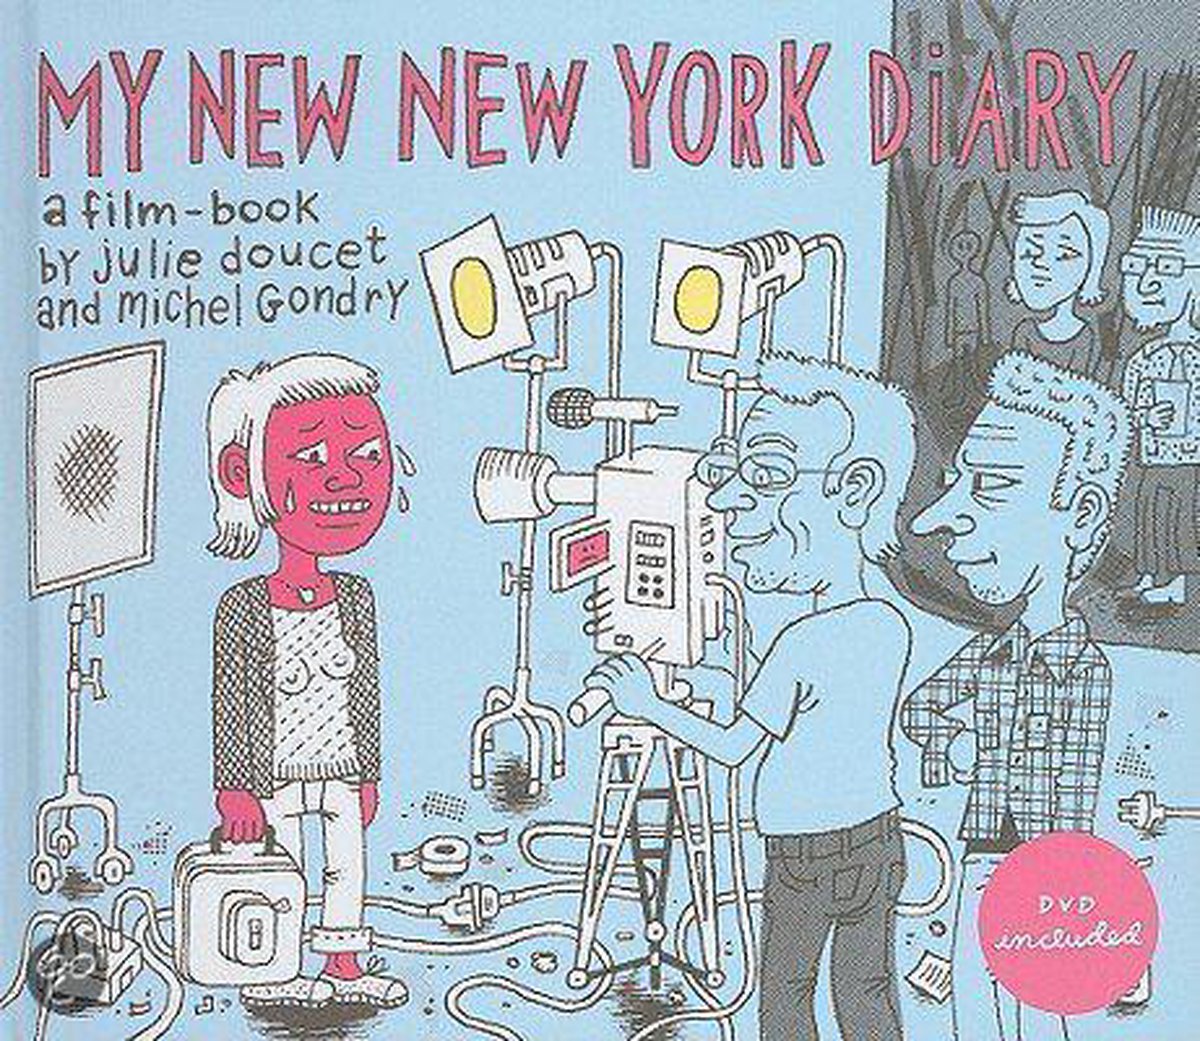 My New New York Diary